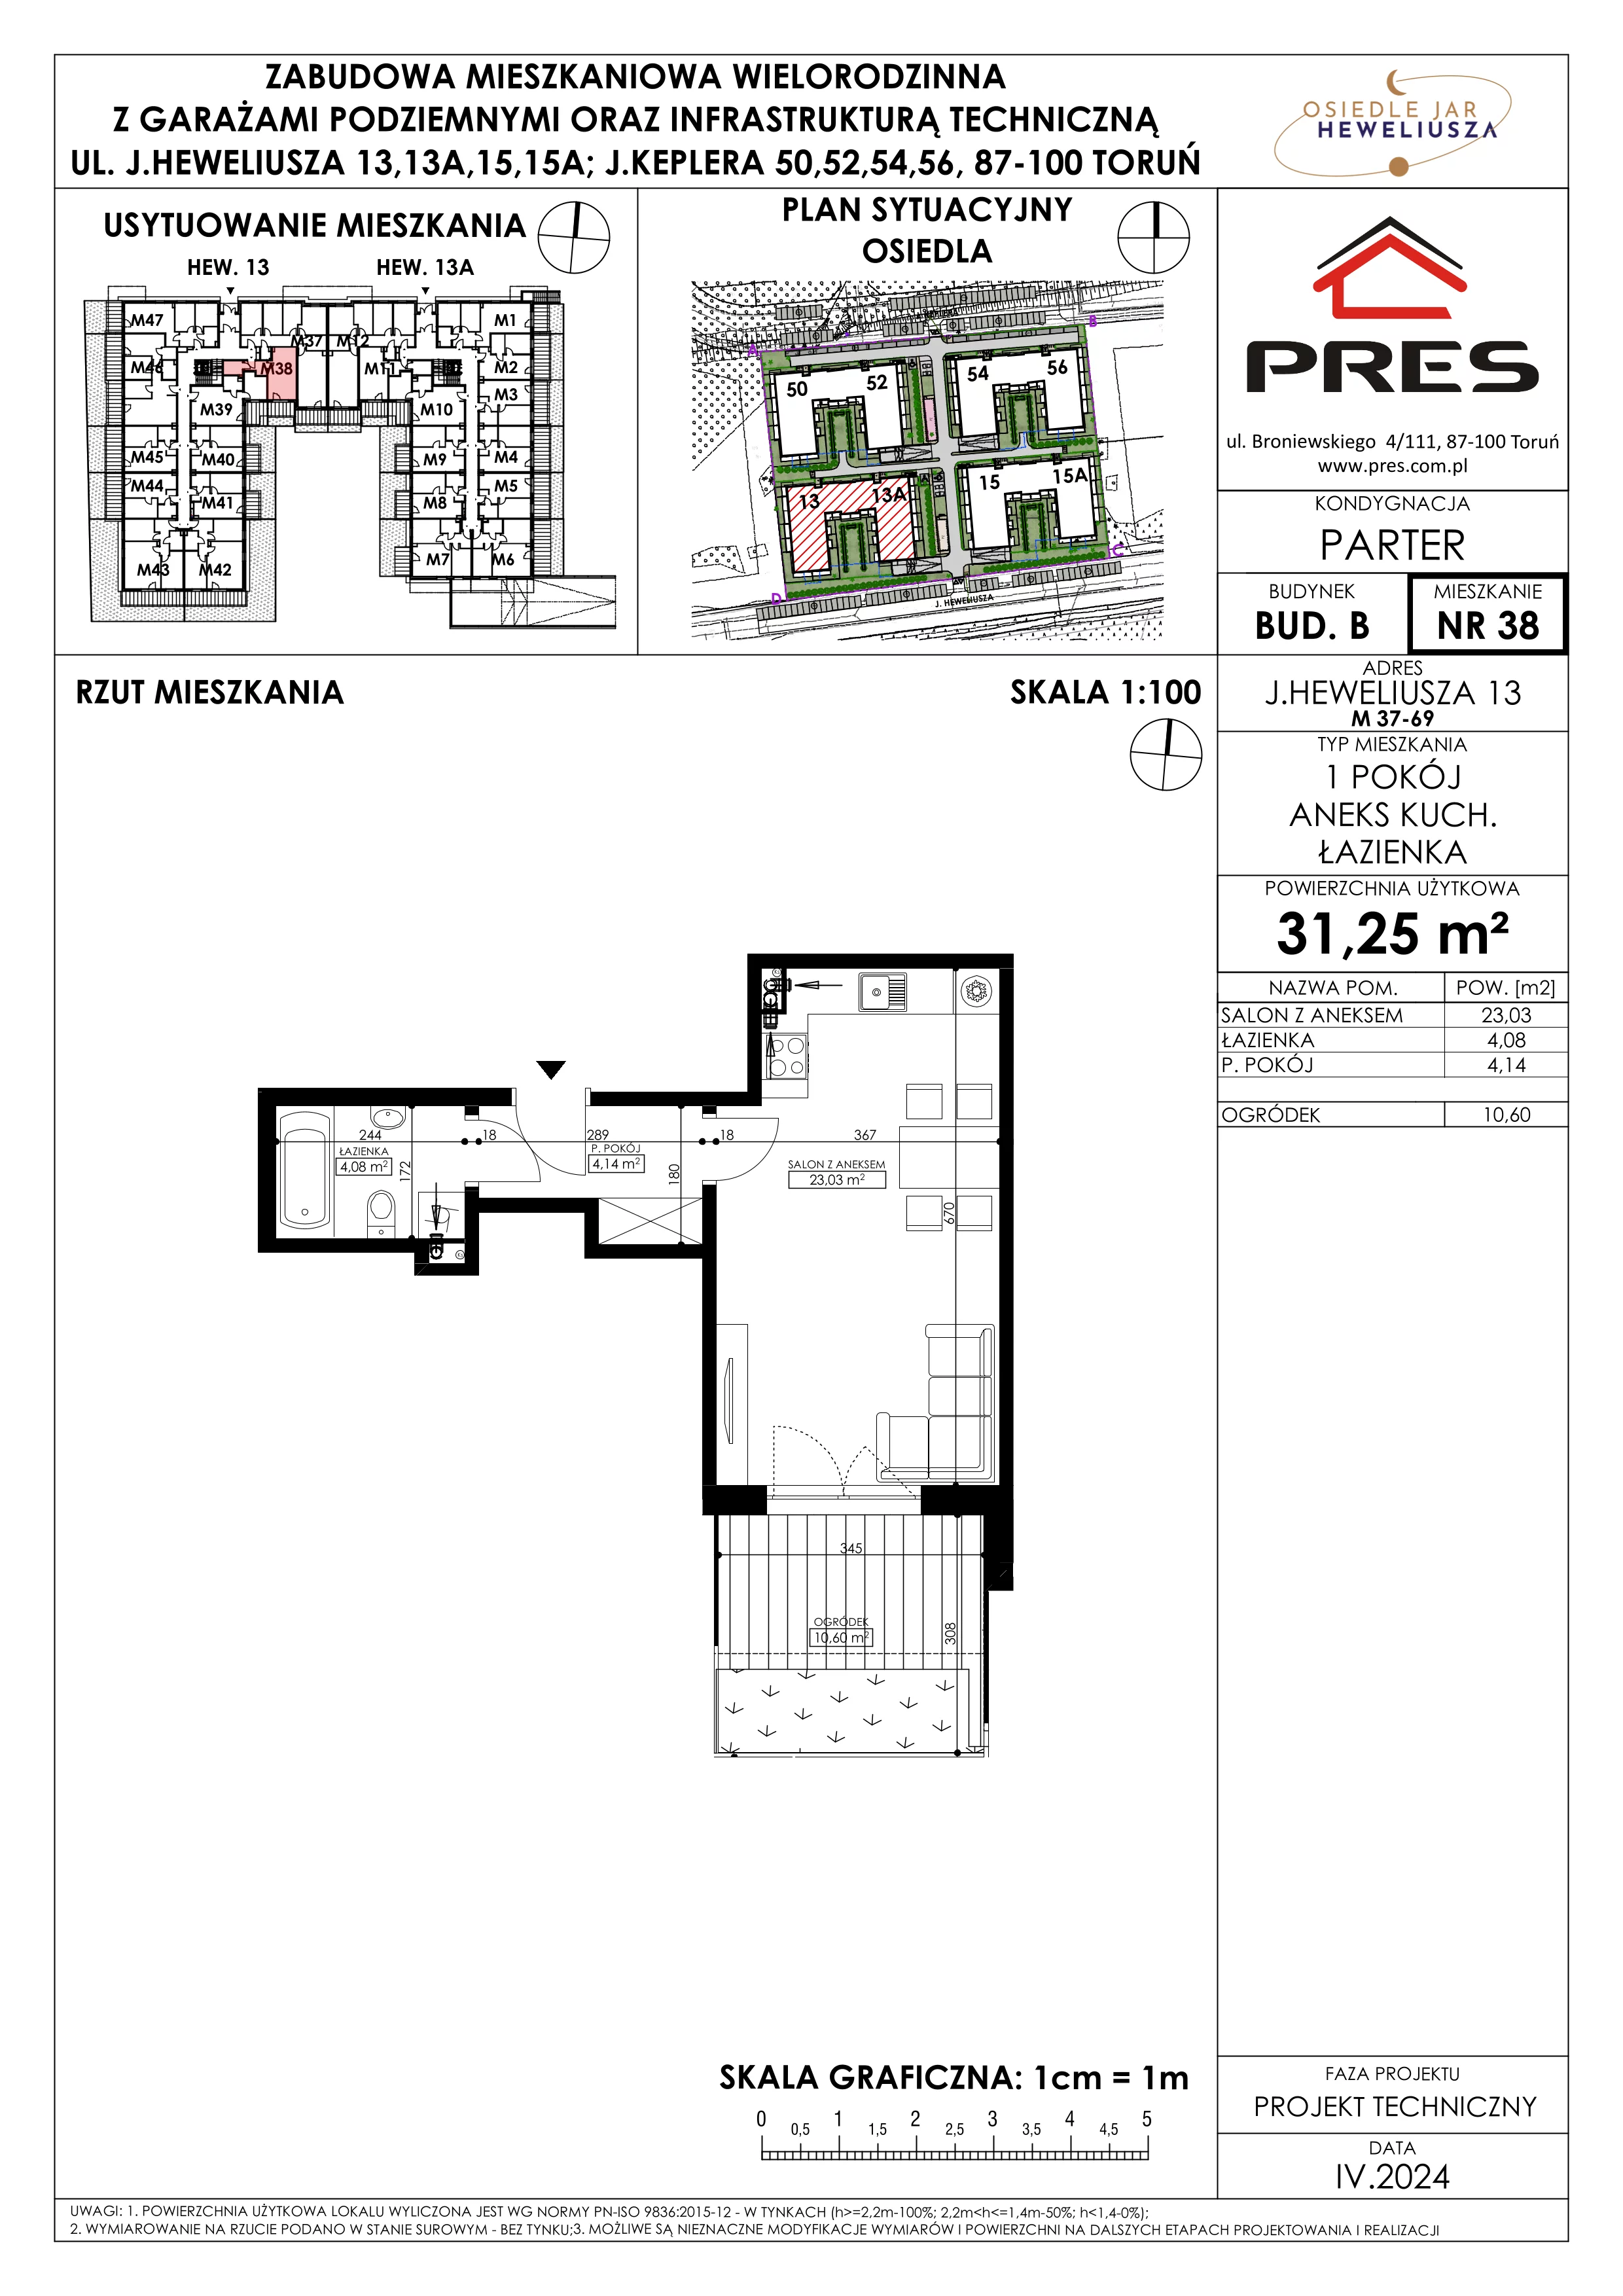 Mieszkanie 31,25 m², parter, oferta nr 38, Osiedle JAR Heweliusza - Etap II, Toruń, Wrzosy, JAR, ul. Heweliusza 13-15A